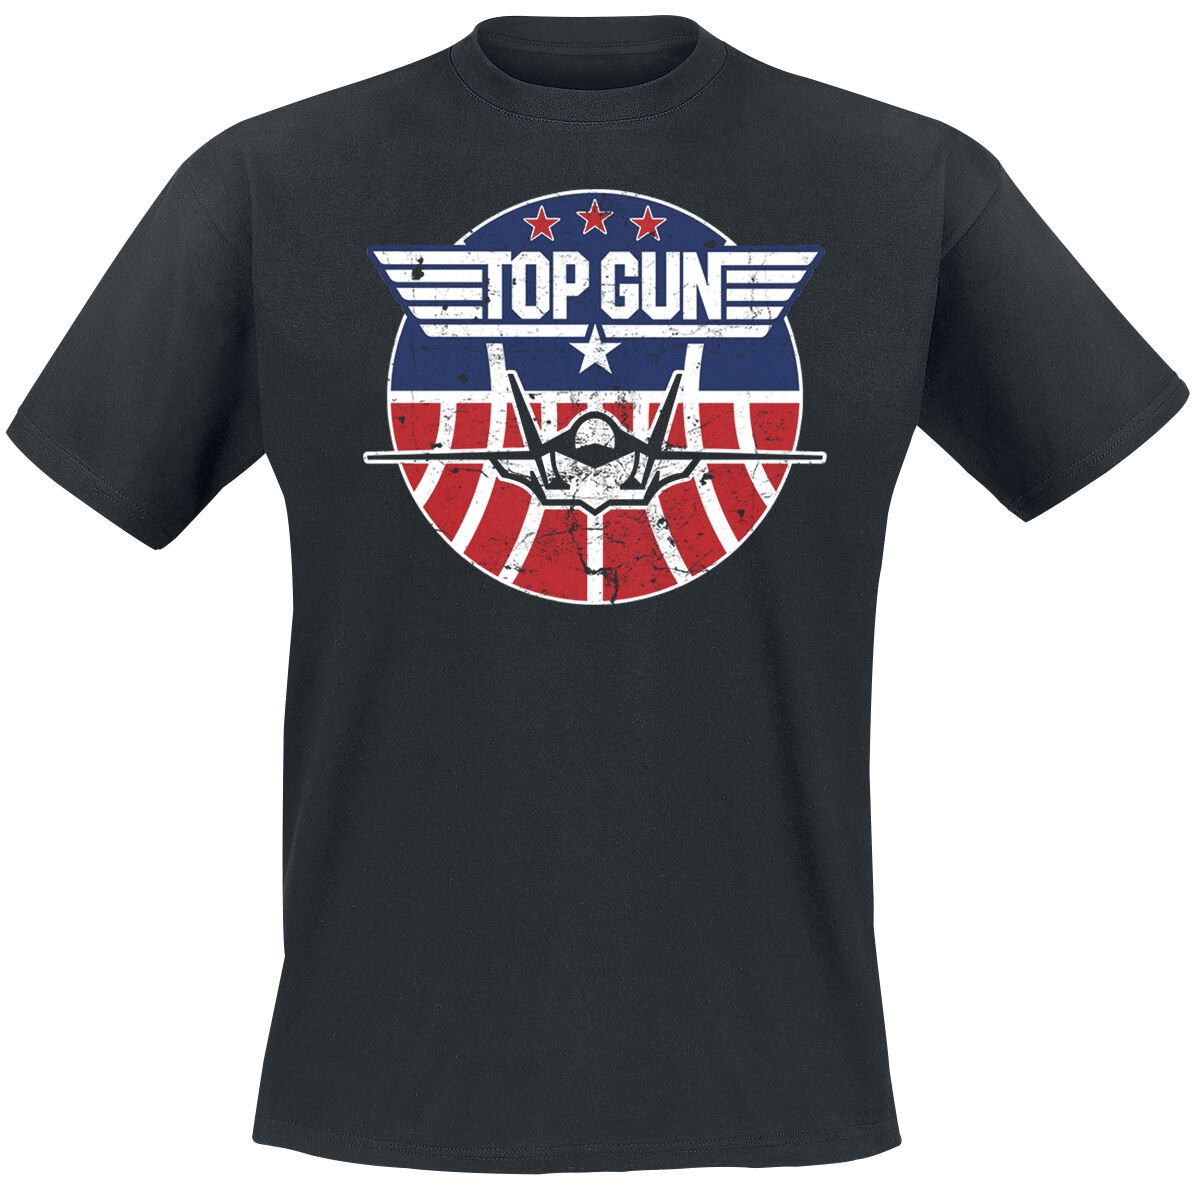 Image of T-Shirt di Top Gun - Maverick - Tomcat - S a 5XL - Uomo - nero